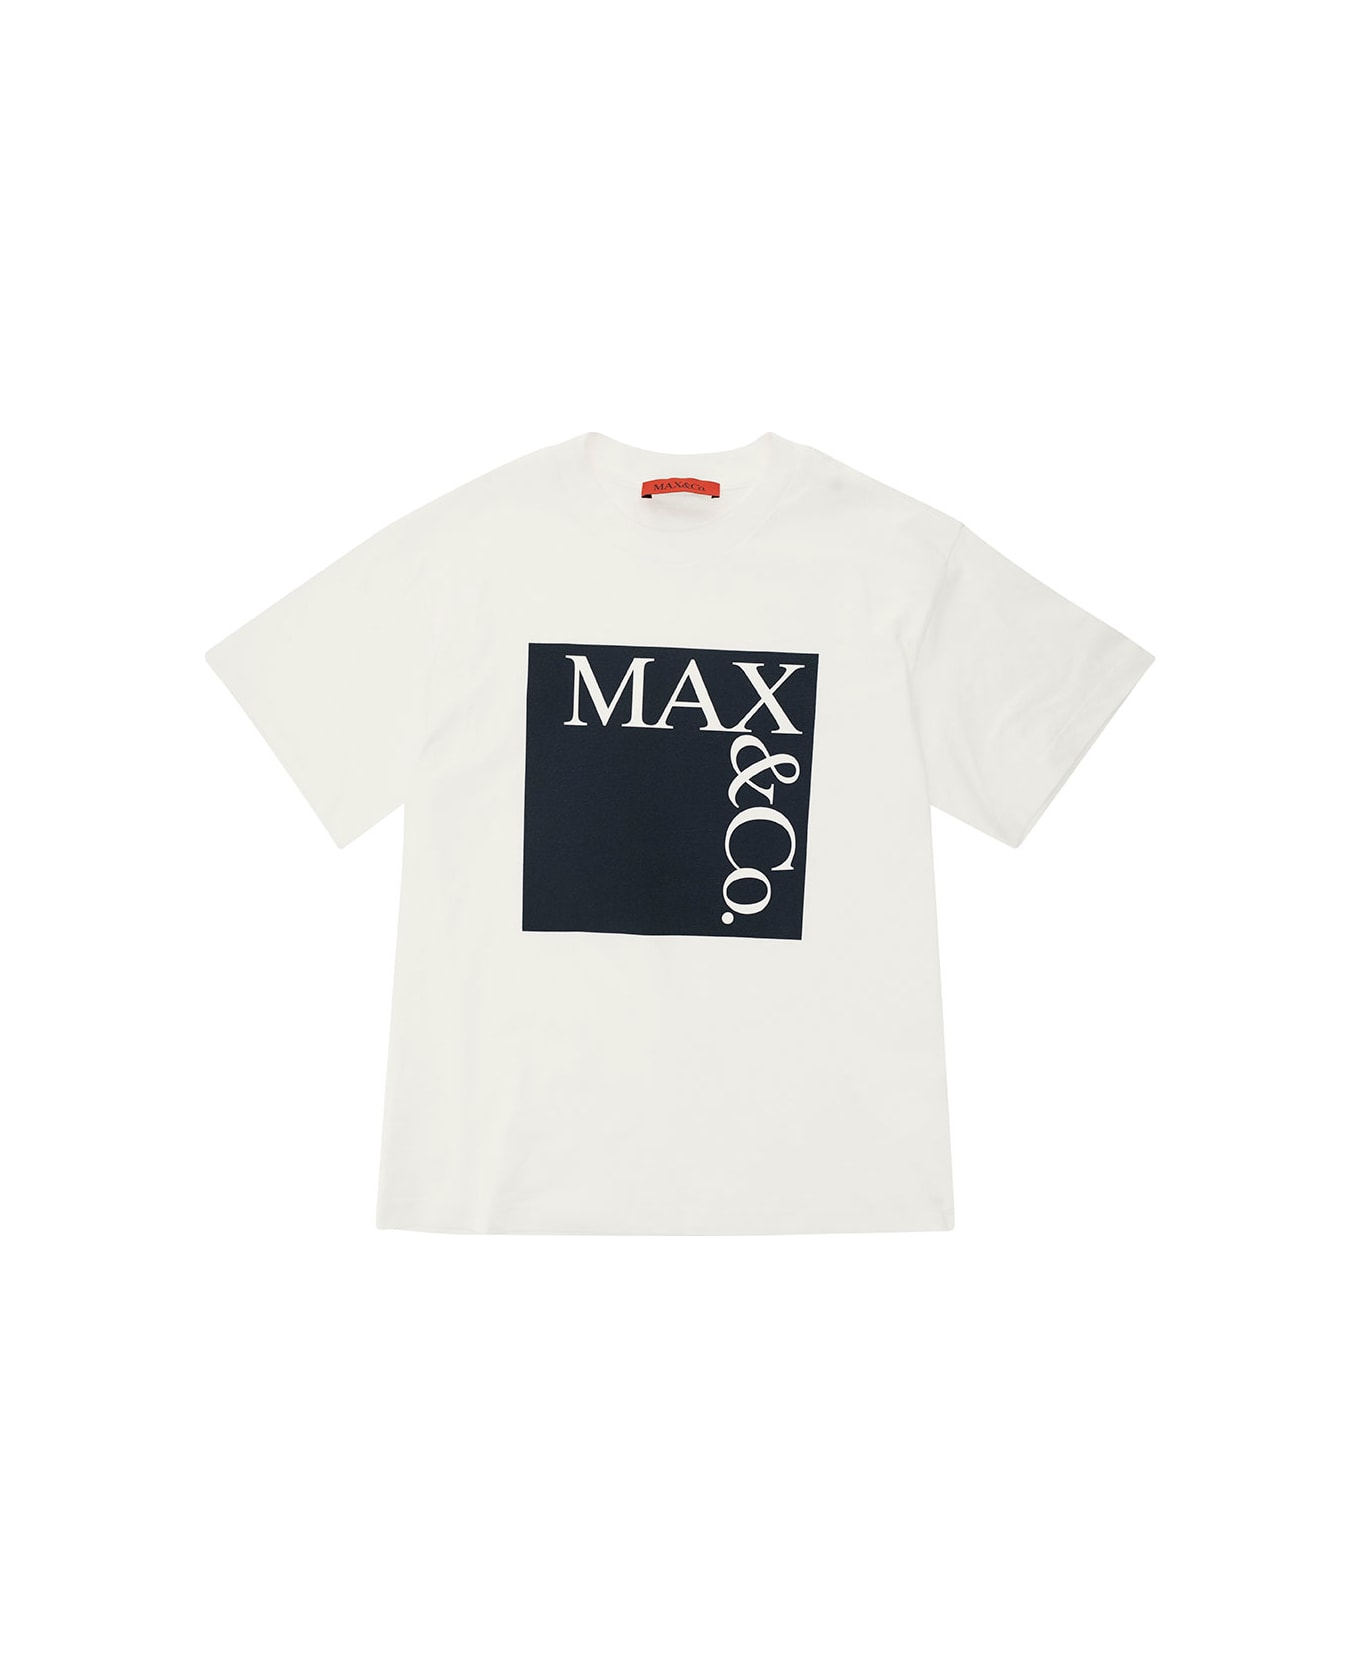 Max&Co. Mx0005mx014maxt1fmx10b - B